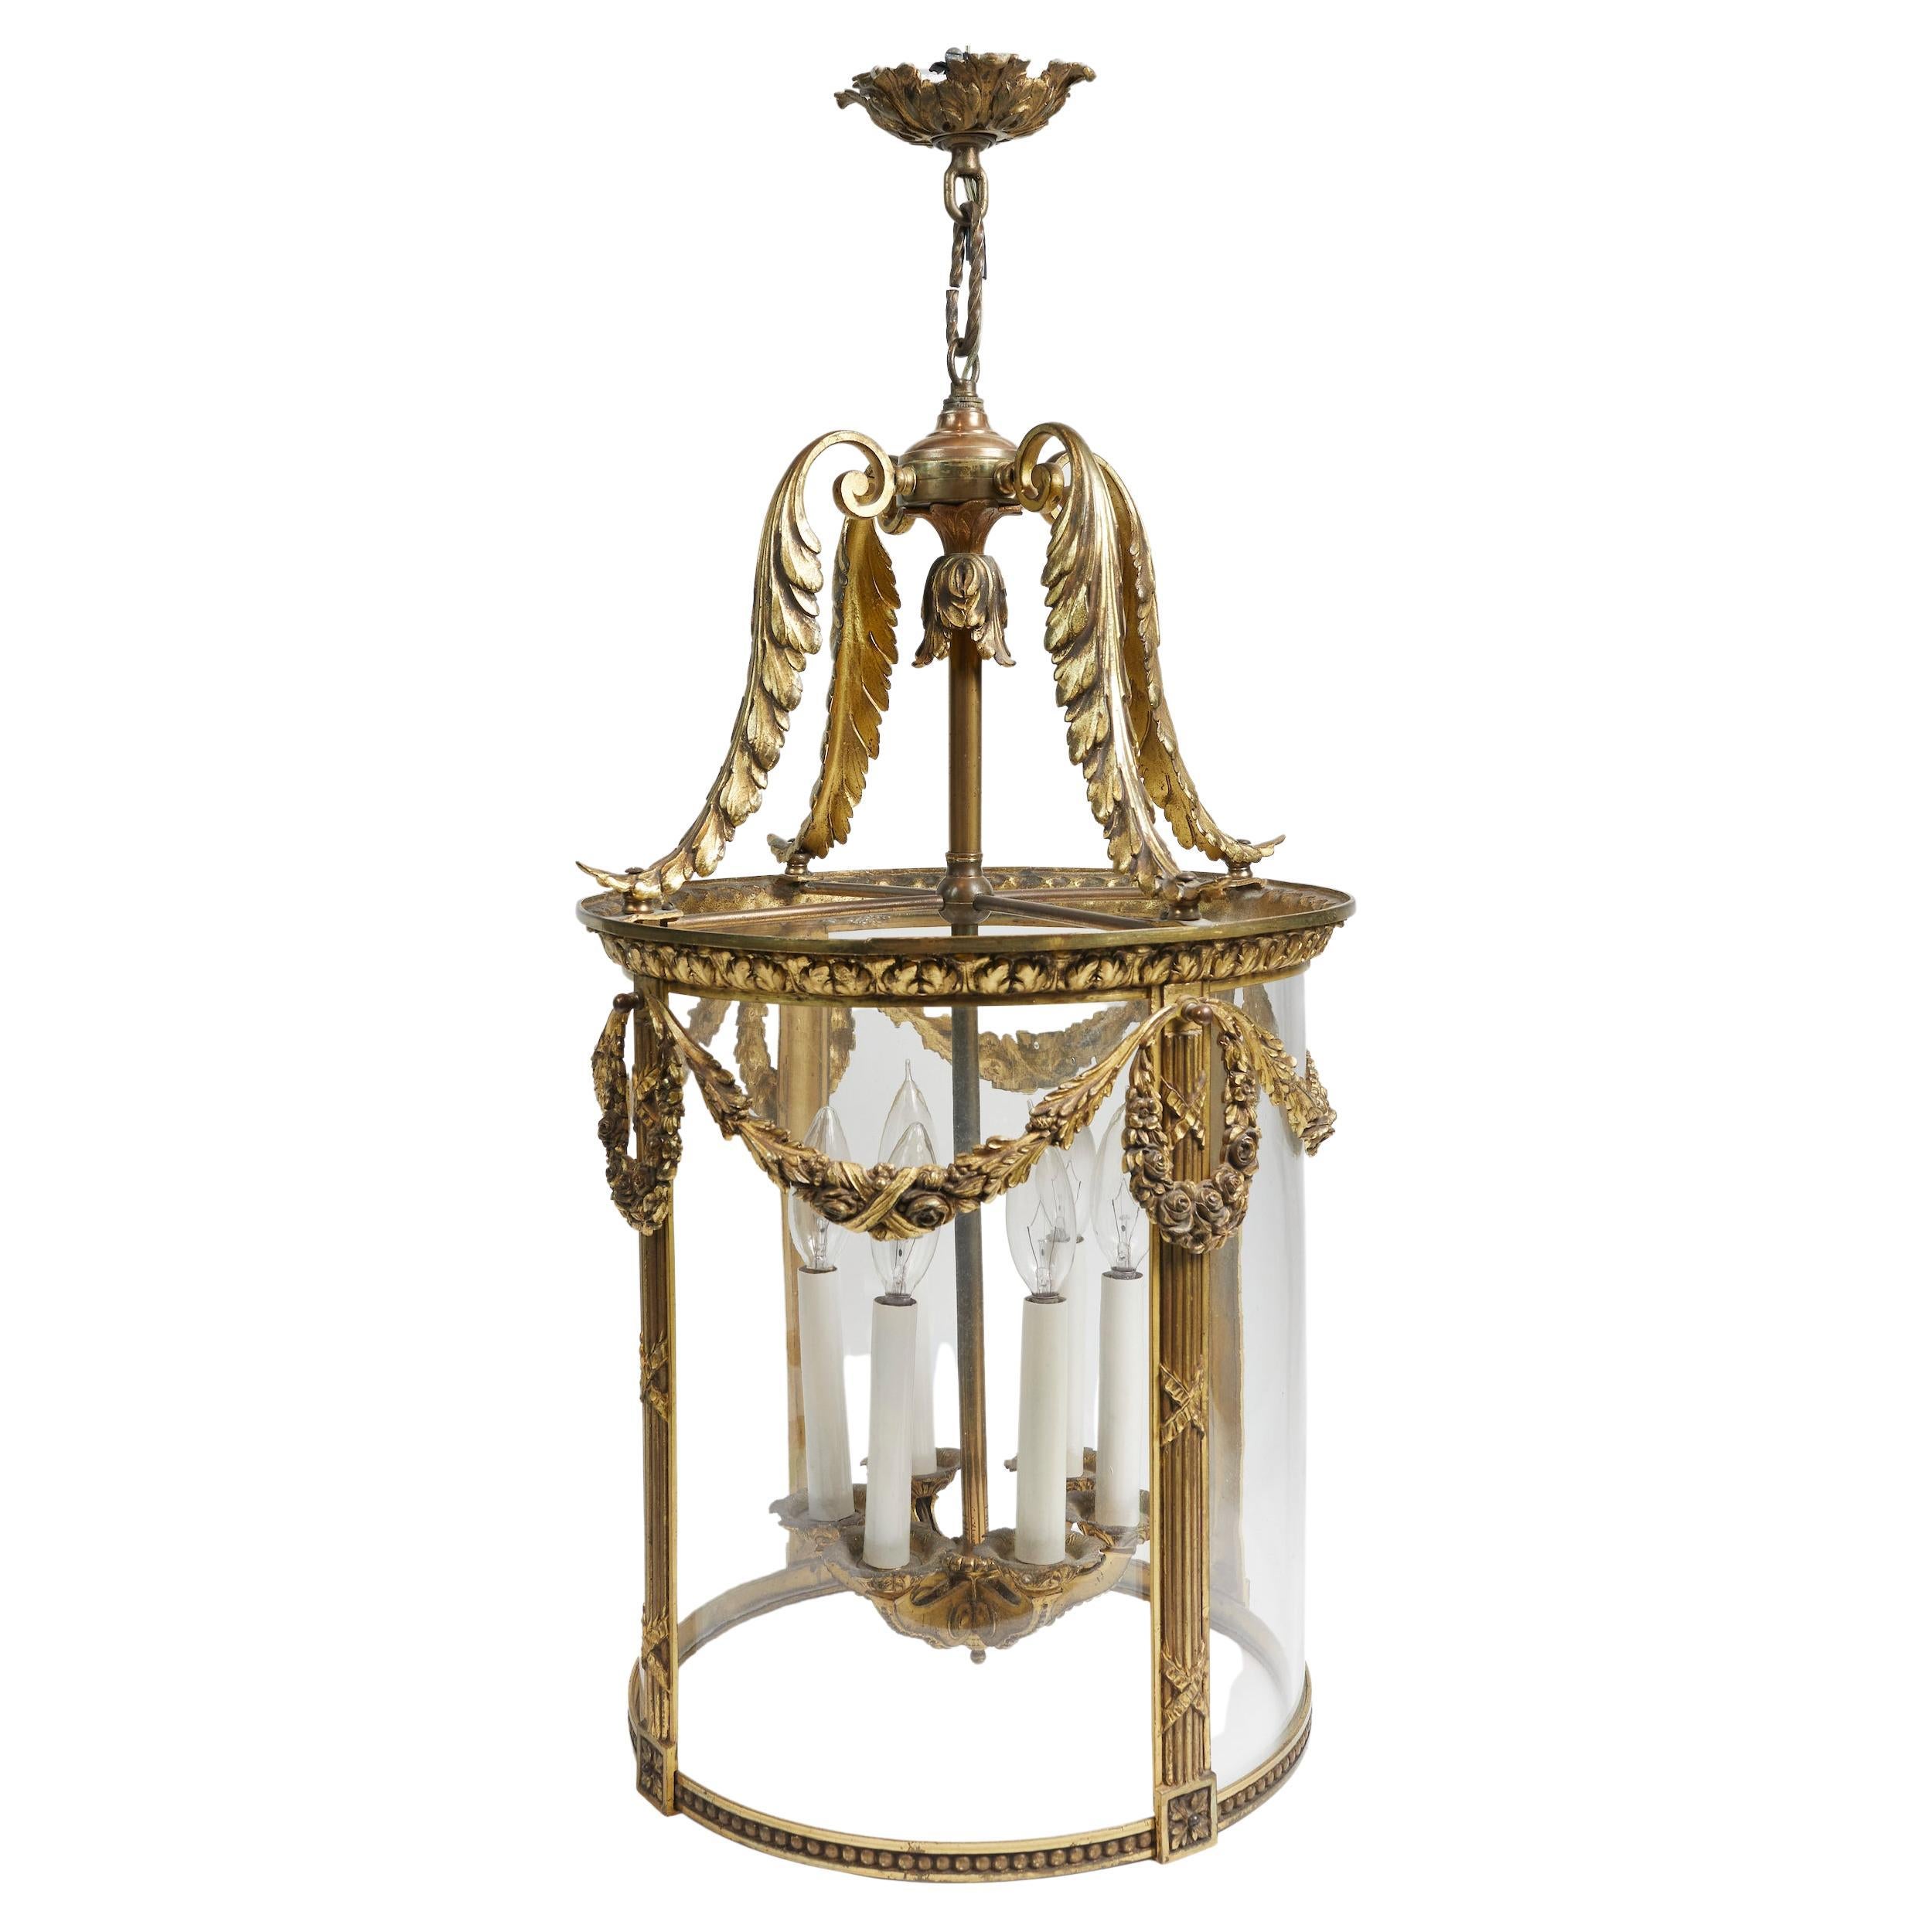 Magnifique lanterne circulaire française de style Louis XVI en bronze doré